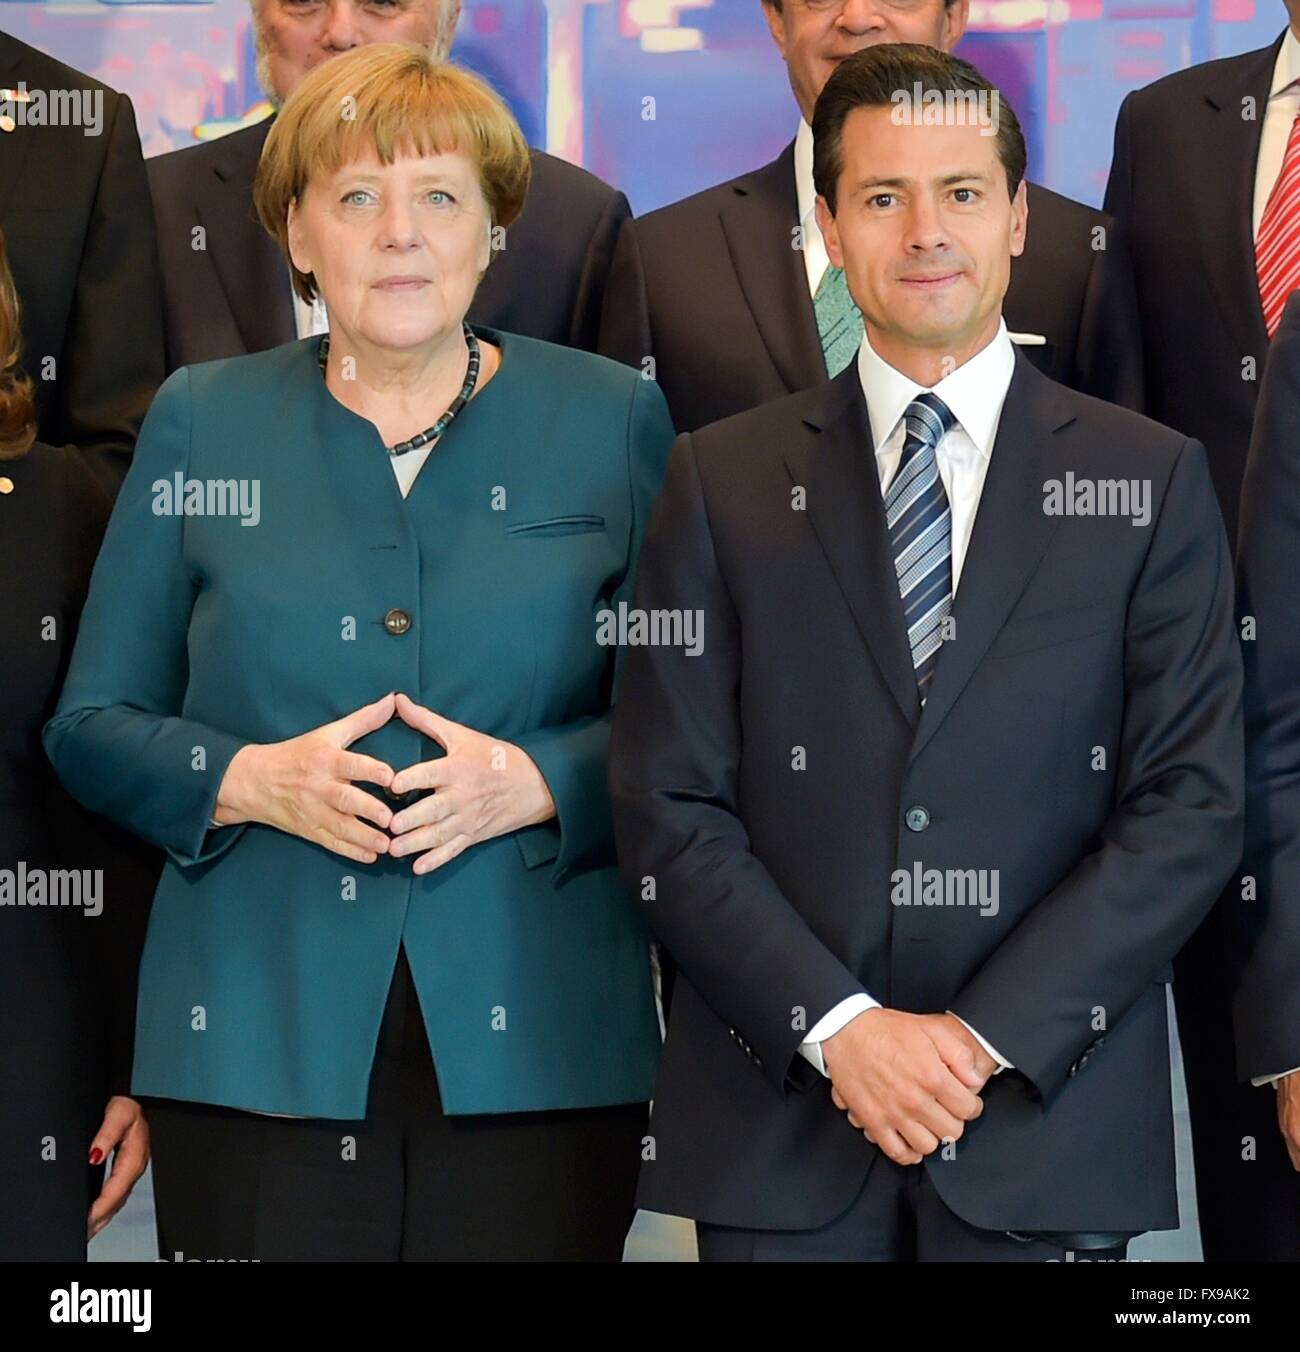 Il cancelliere tedesco Angela Merkel sta con il presidente messicano Enrique Peña Nieto per una foto di gruppo in seguito ampliato incontri presso la cancelleria il 12 aprile 2016 a Berlino, Germania. Merkel ha offerto il suo sostegno per la formazione formazione soldati messicano nella sua lotta contro la criminalità organizzata e la guerra globale in materia di droga. Foto Stock